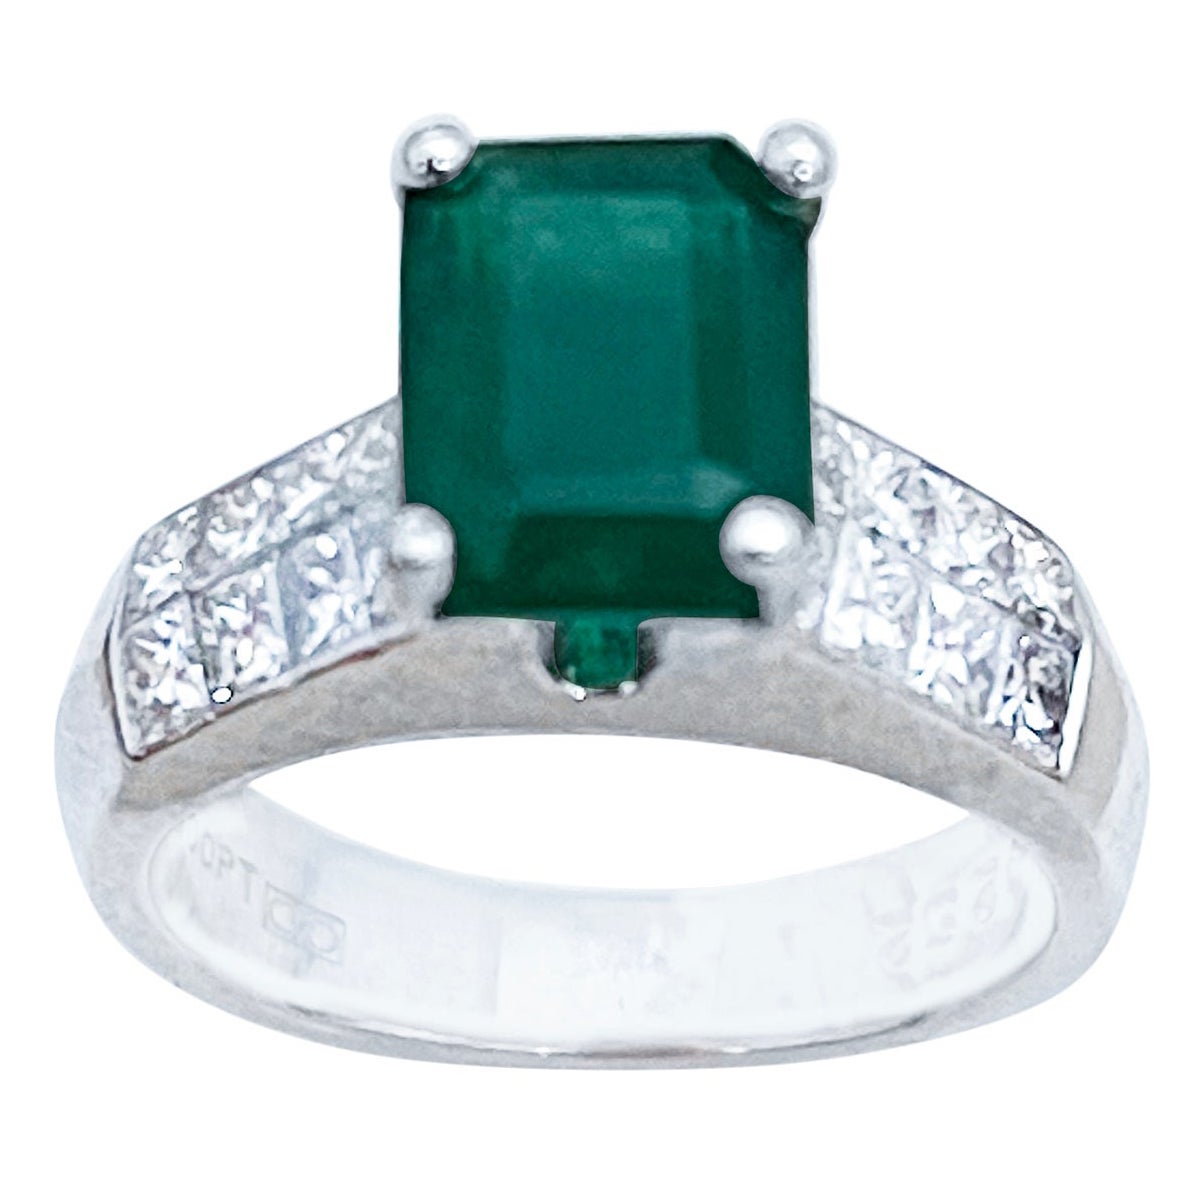 Natural 3 Carat Emerald Cut Emerald & 1 Carat Diamond Ring Platinum